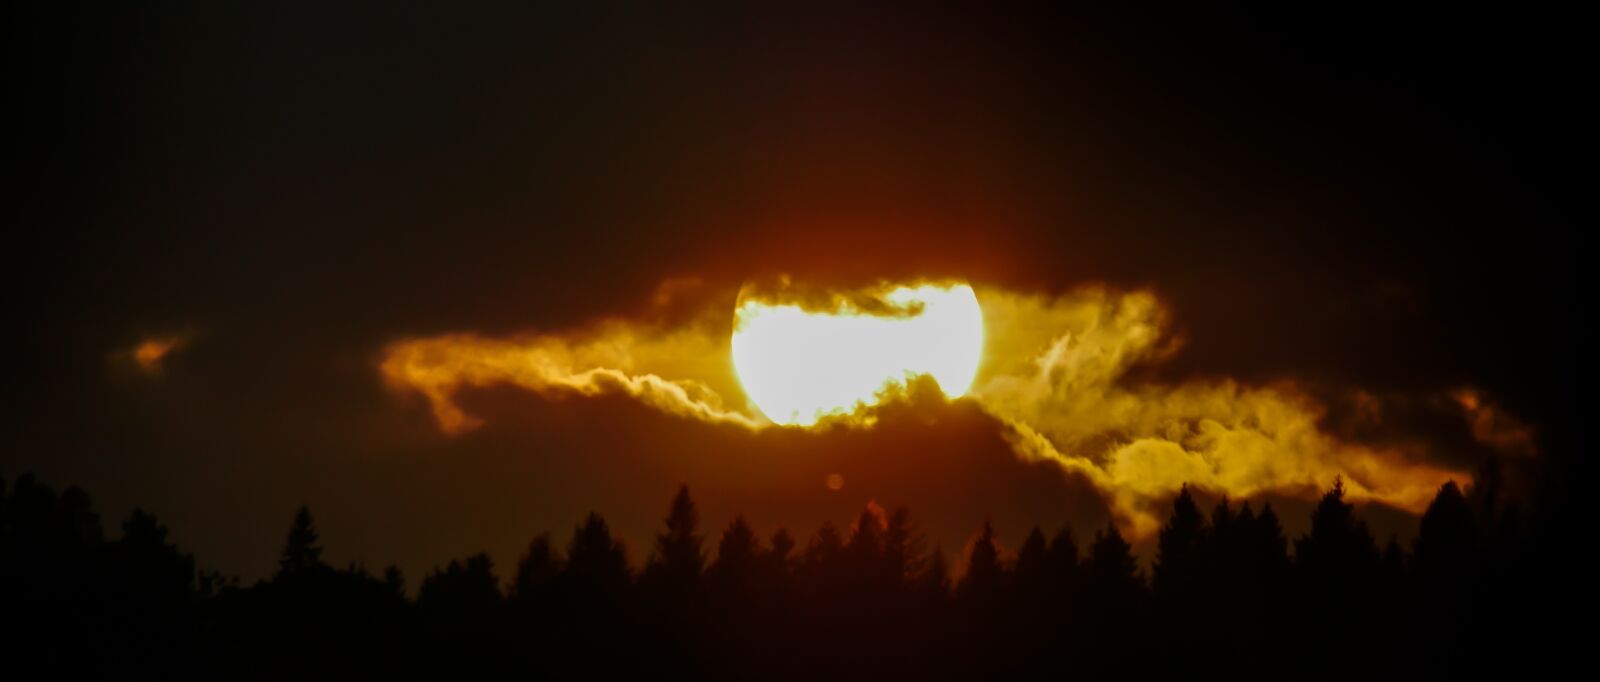 Panasonic Lumix G Vario 100-300mm F4-5.6 OIS sample photo. Sunset, evening sun, sun photography